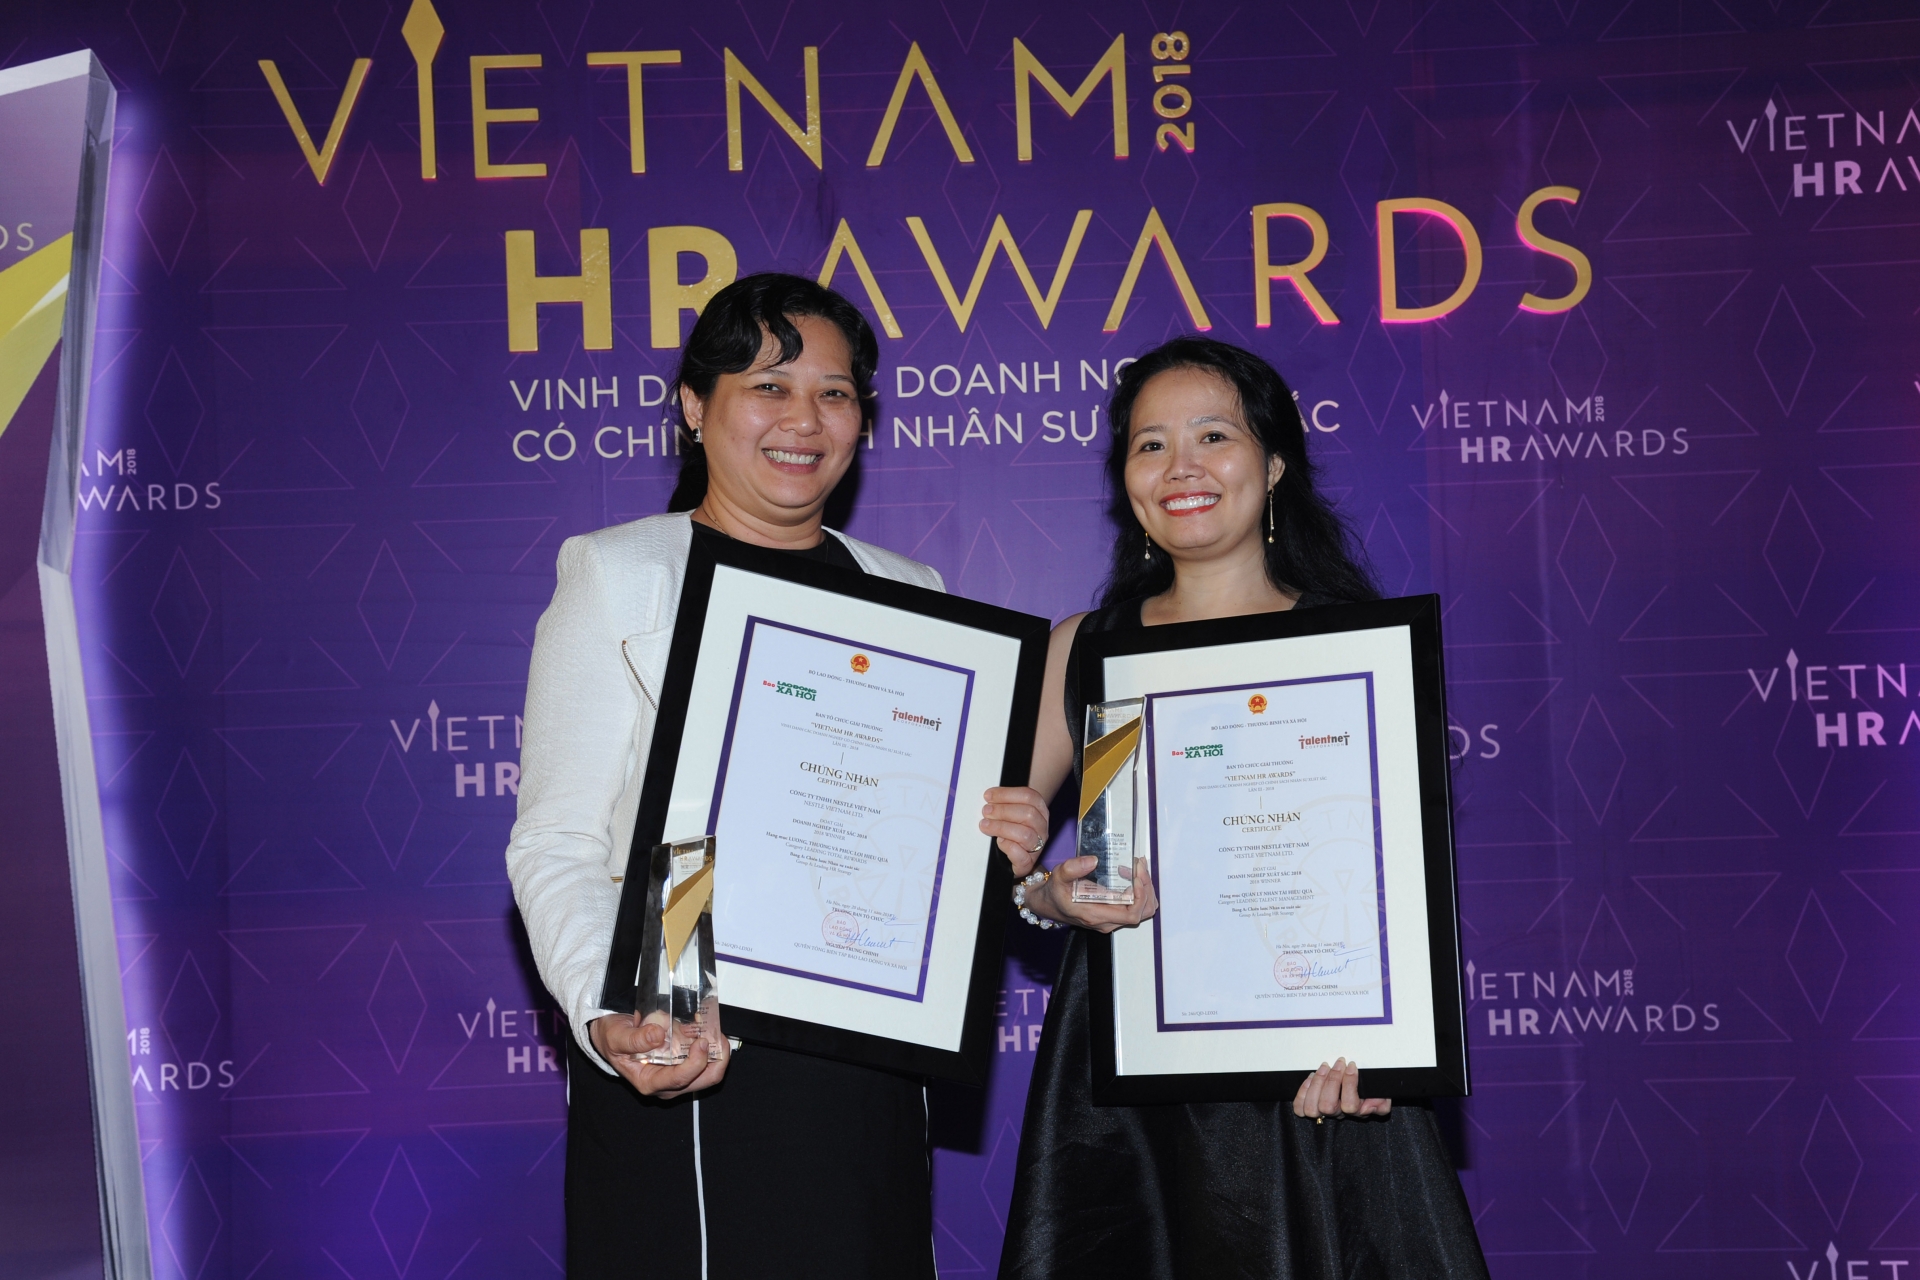 Nestlé Vietnam honoured at 2018 Vietnam HR Awards